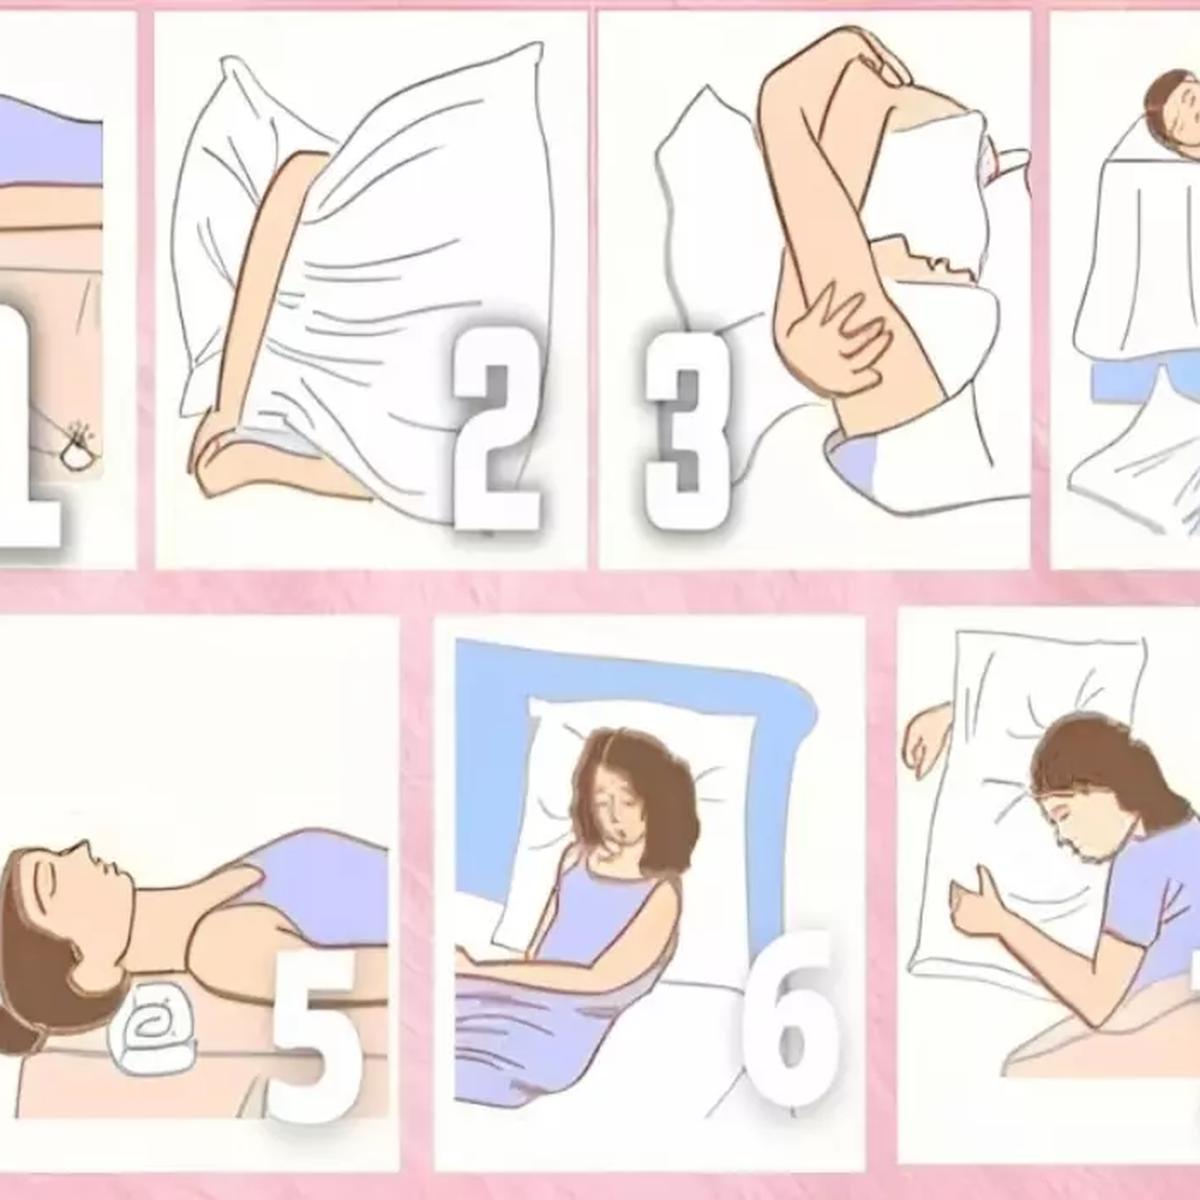 Dime cómo duermes y te diré qué tipo de almohada te conviene usar